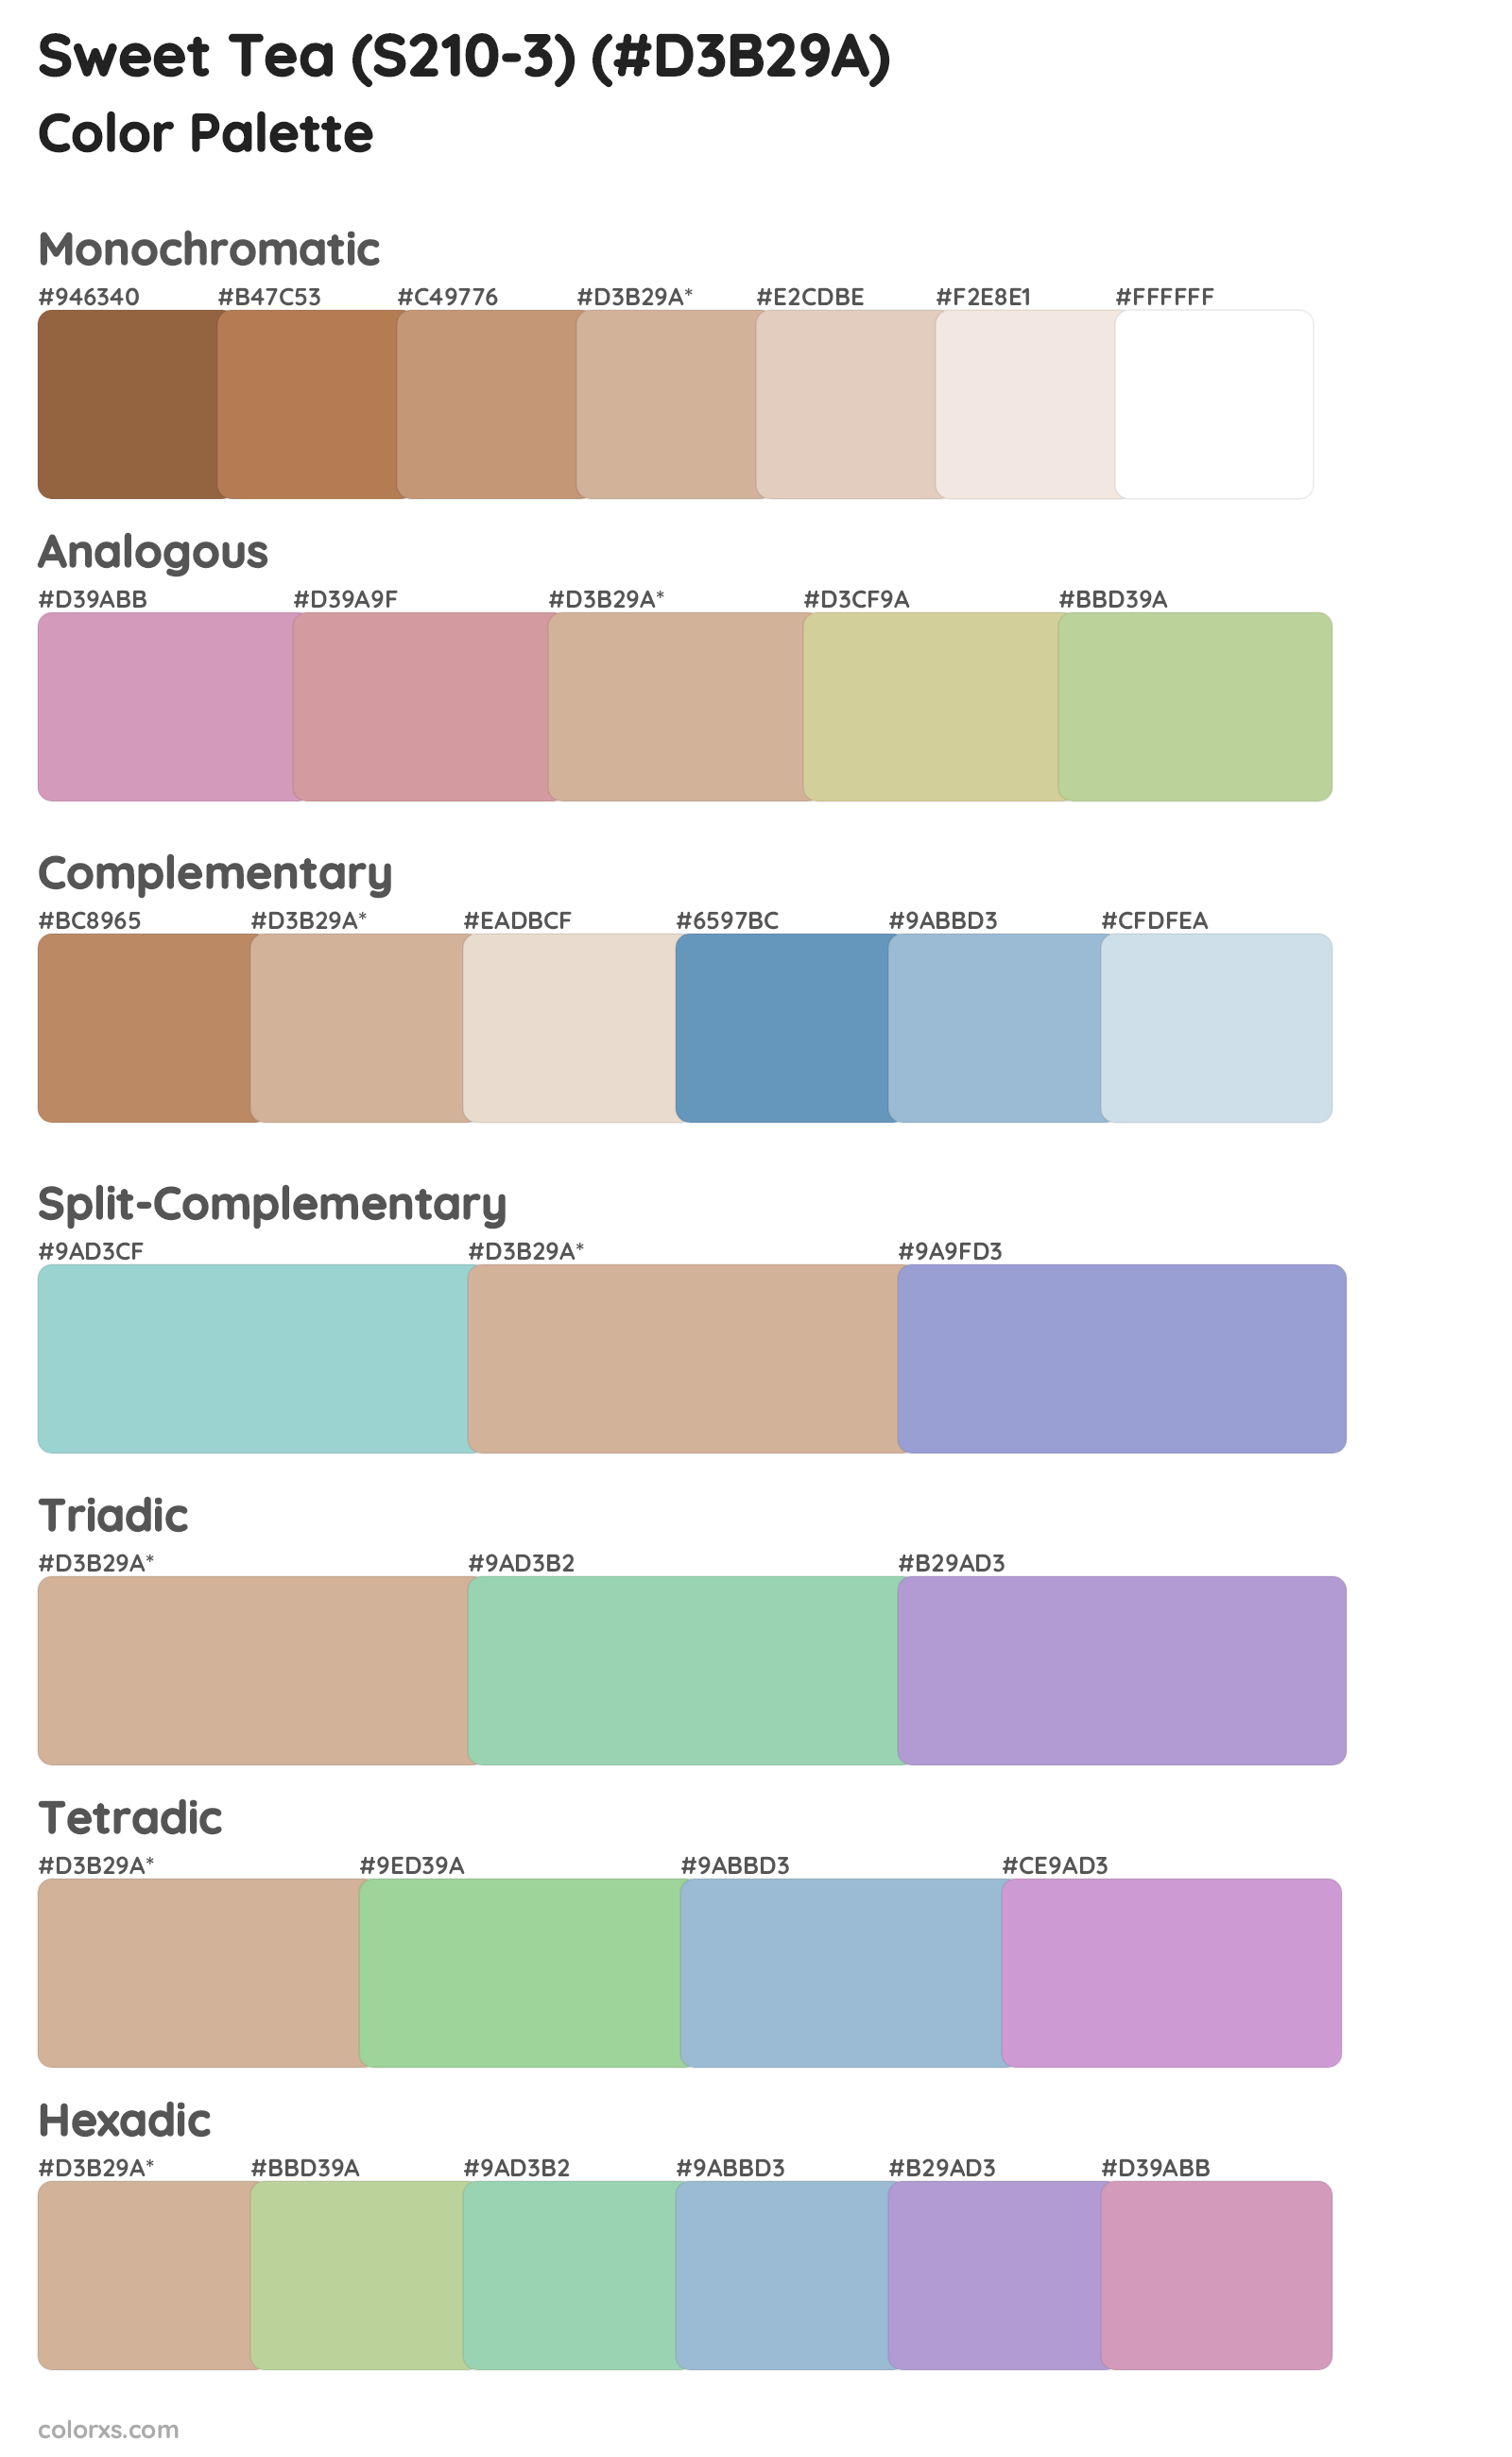 Sweet Tea (S210-3) Color Scheme Palettes